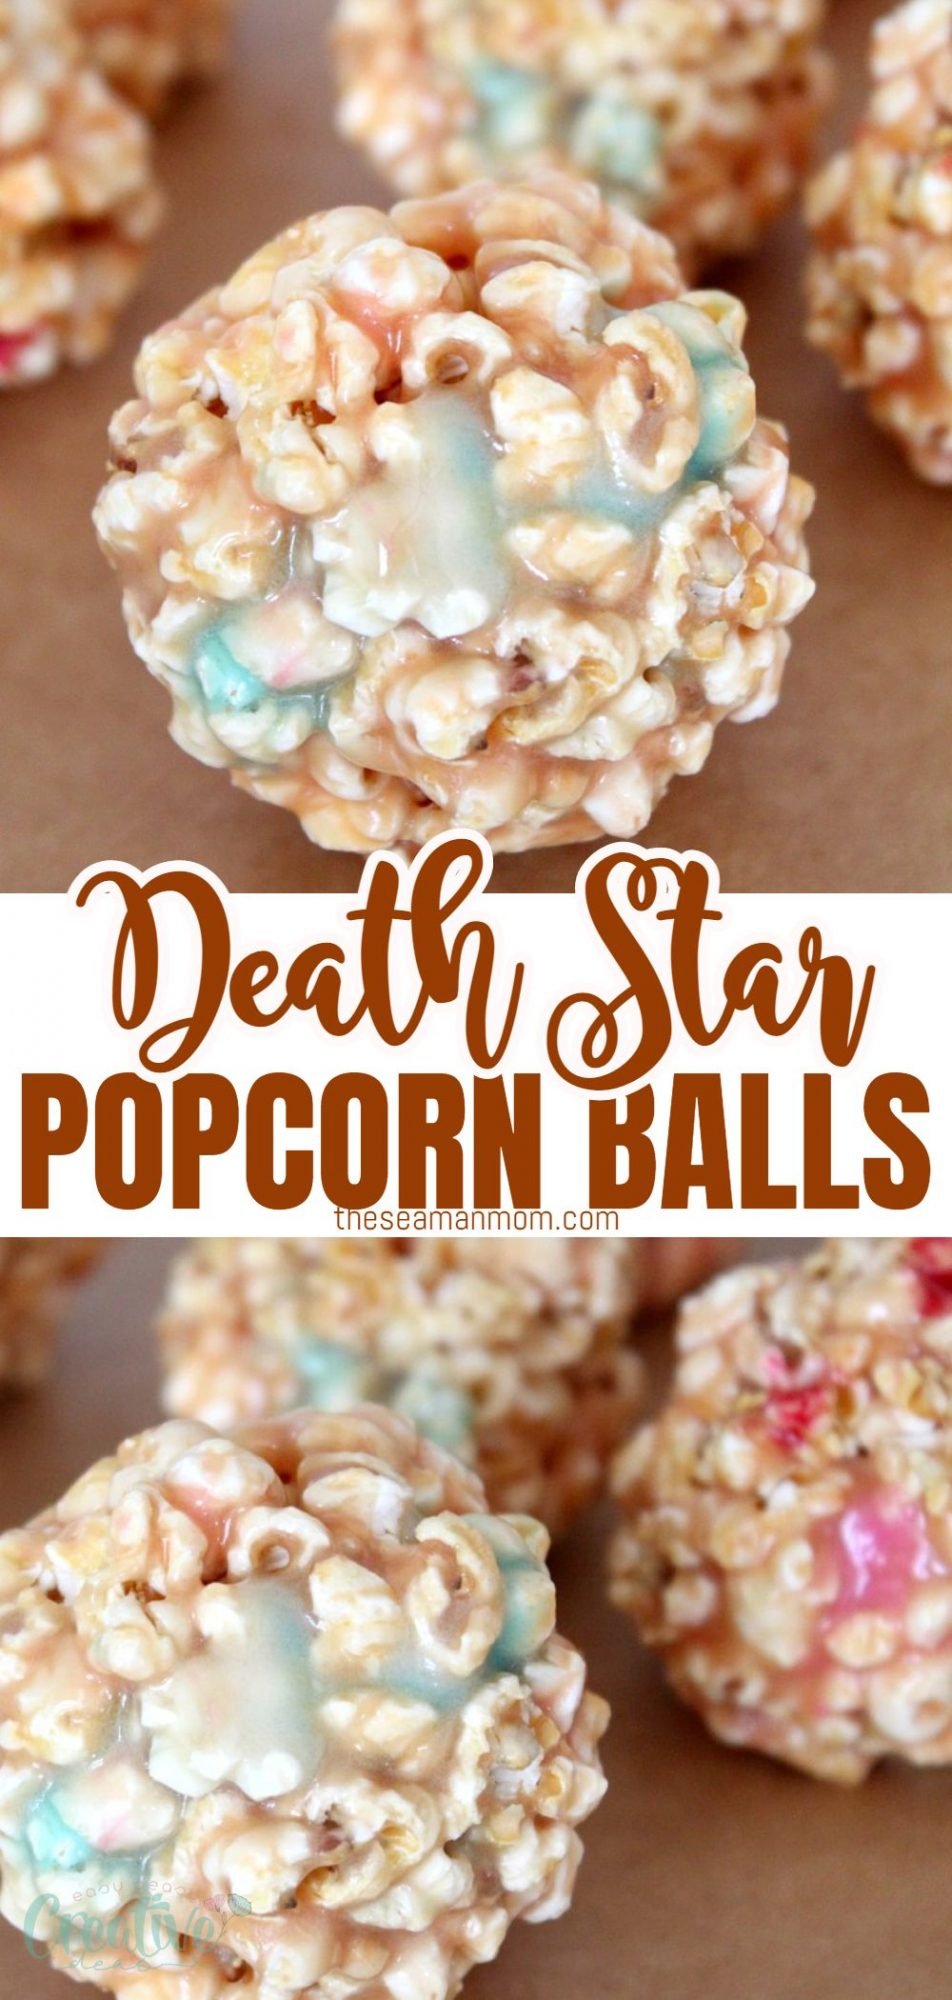 Marshmallow popcorn balls